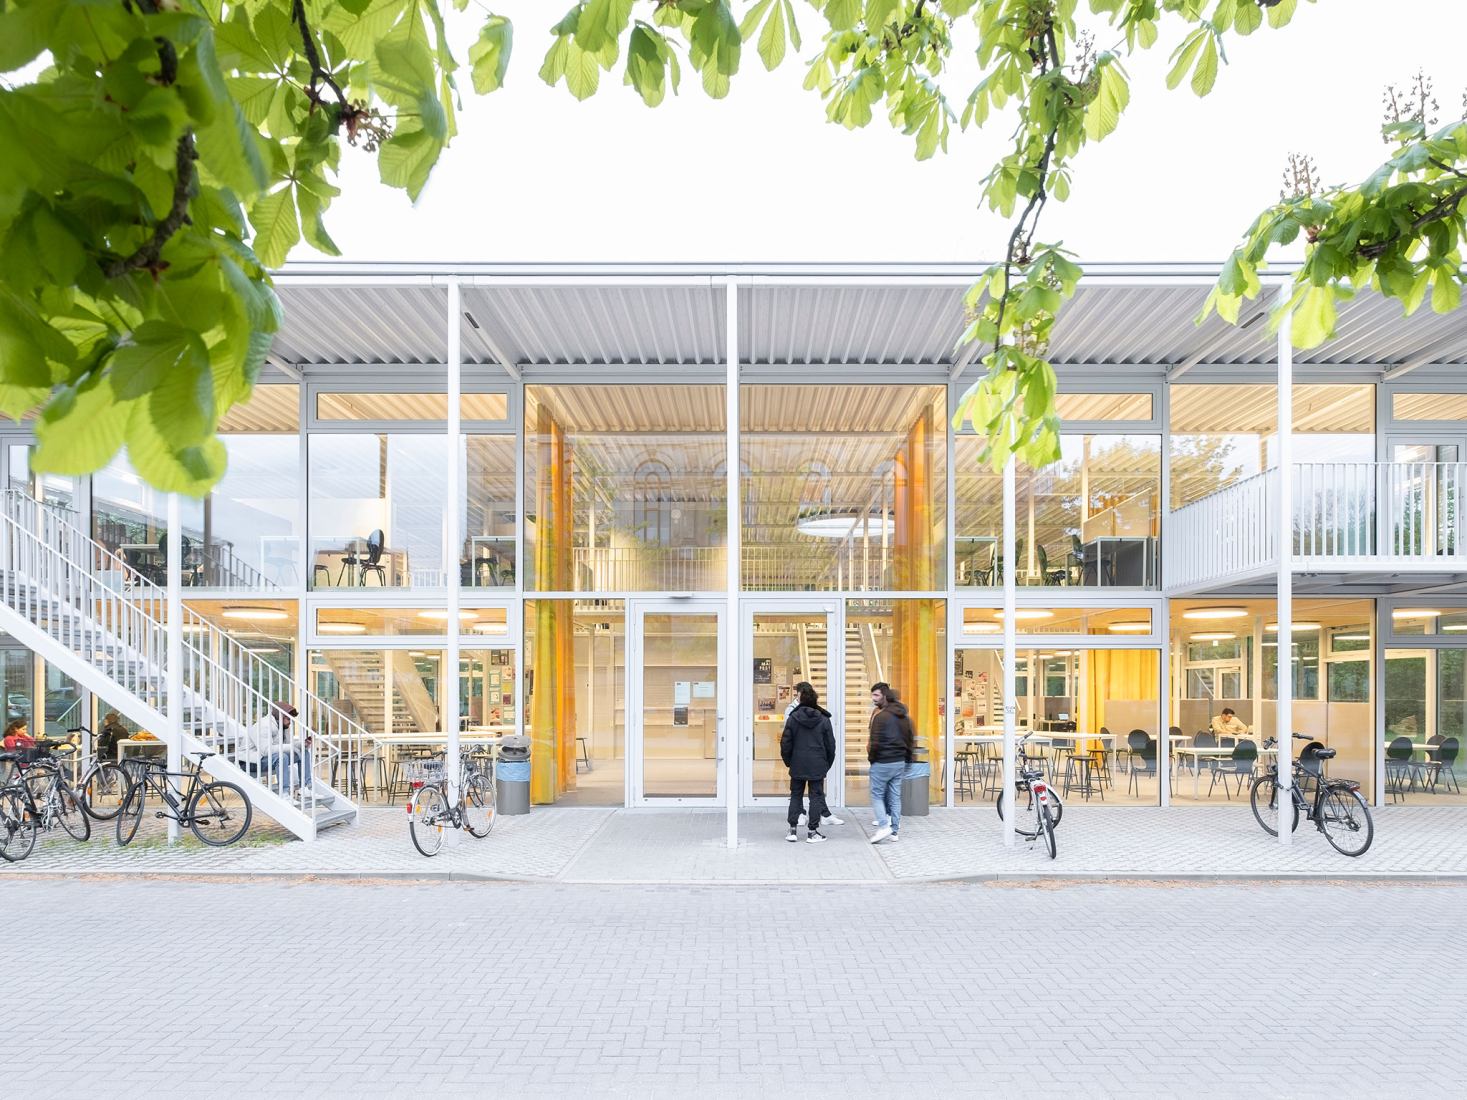 Pabellón del campus de la Universidad Técnica de Braunschweig por Gustav Düsing y Max Hacke. Fotografía por Iwan Baan.